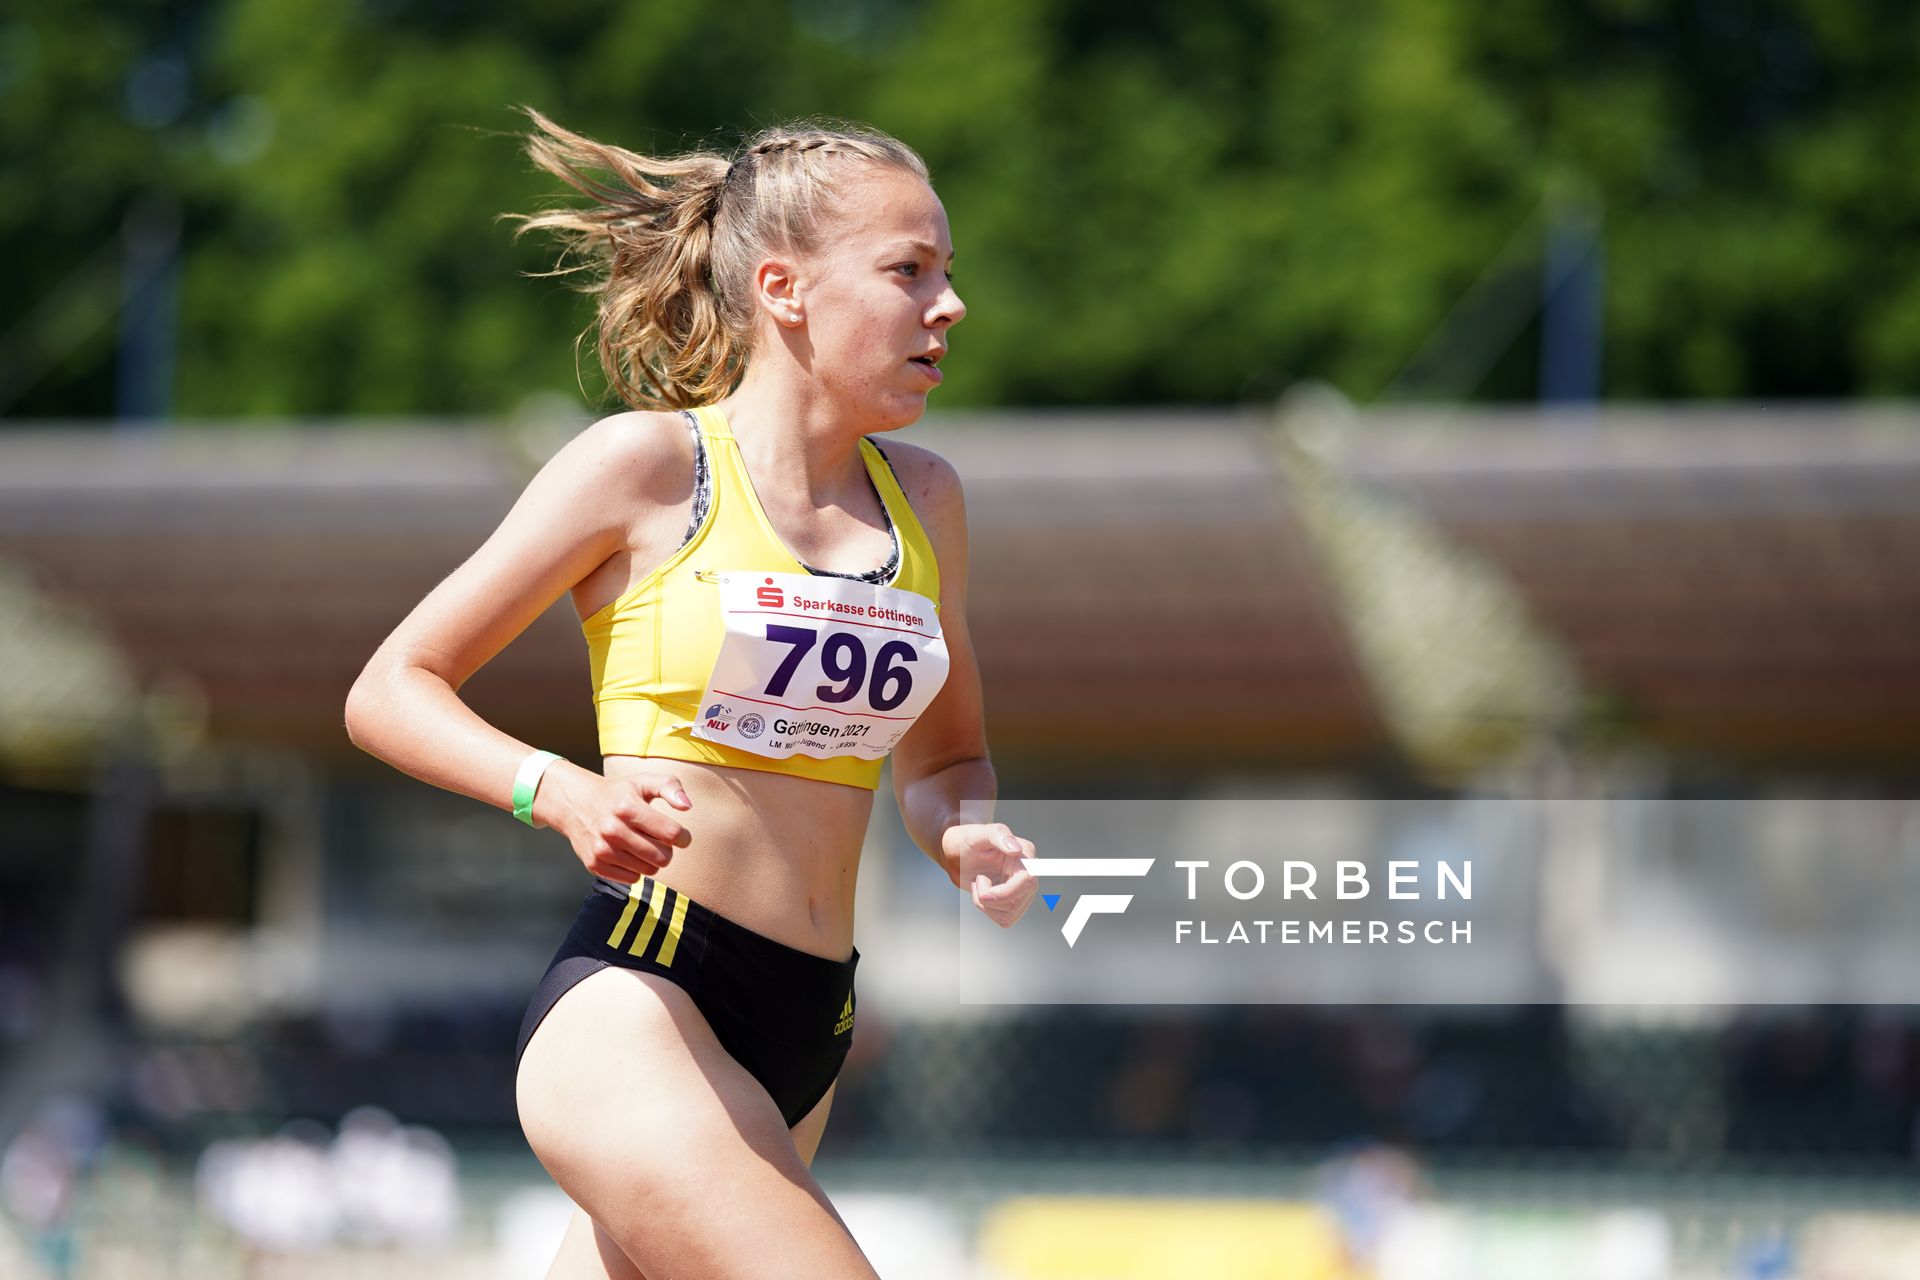 Sophie Hinrichs (VfL Loeningen) ueber 3000m am 19.06.2021 waehrend den NLV + BLV Landesmeisterschaften im Jahnstadion in Göttingen